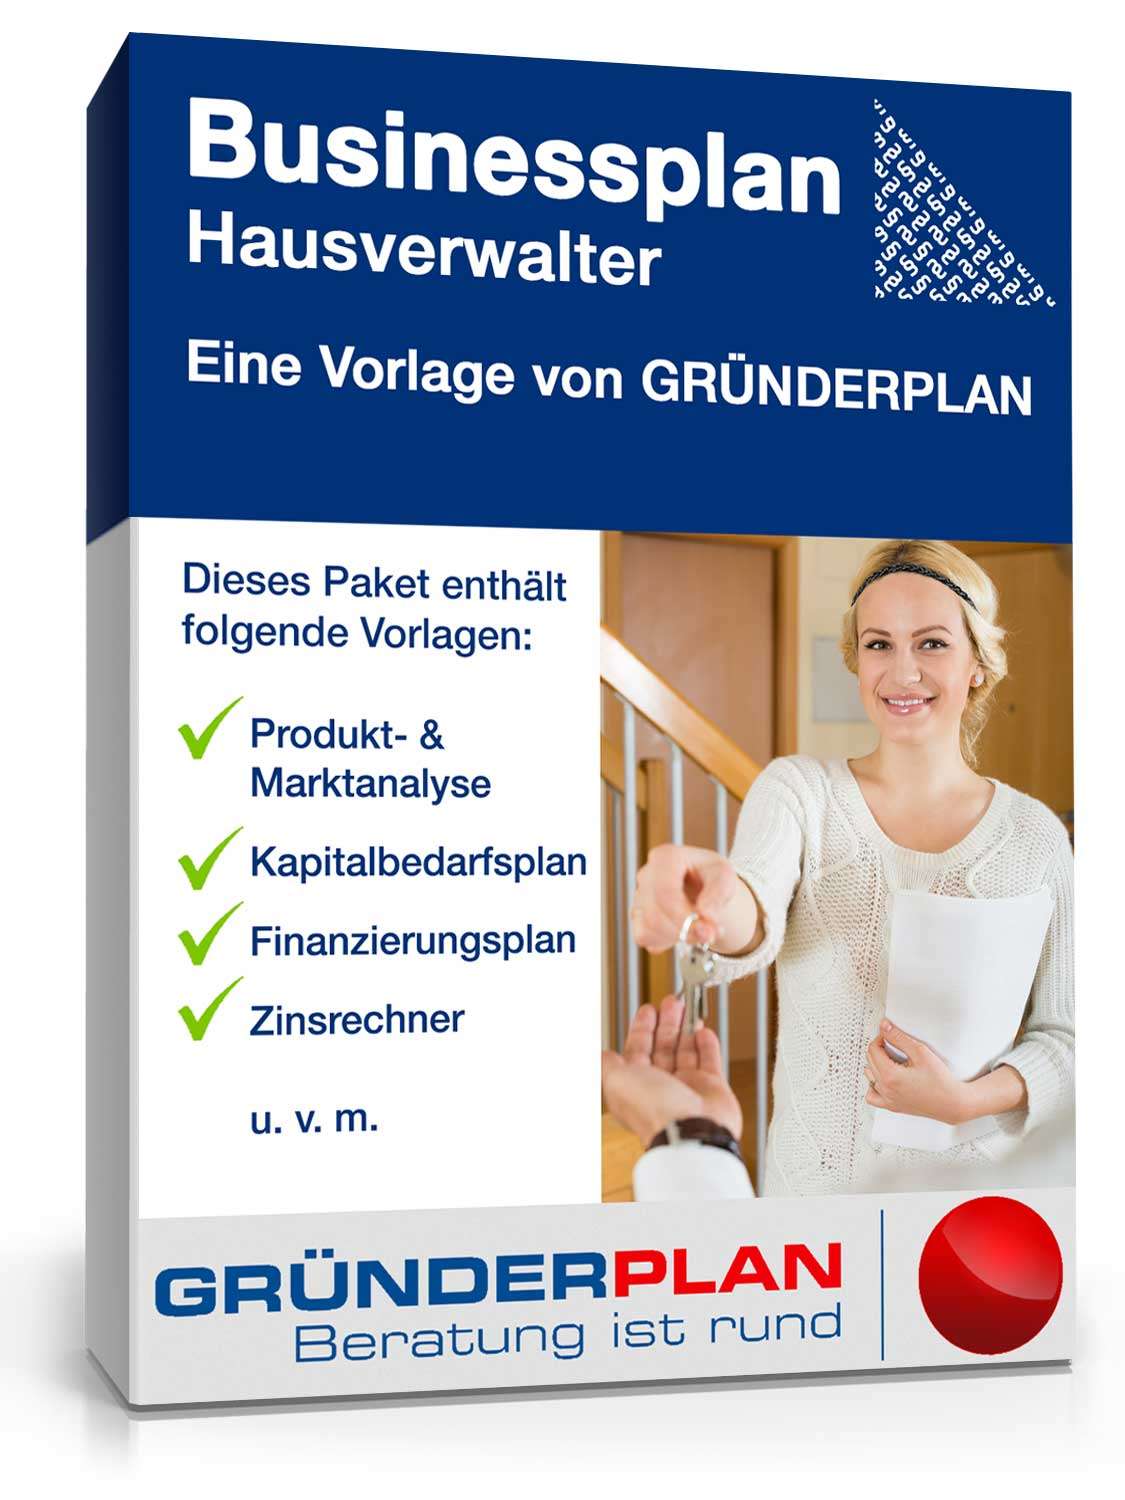 Hauptbild des Produkts: Businessplan Hausverwaltung von Gründerplan